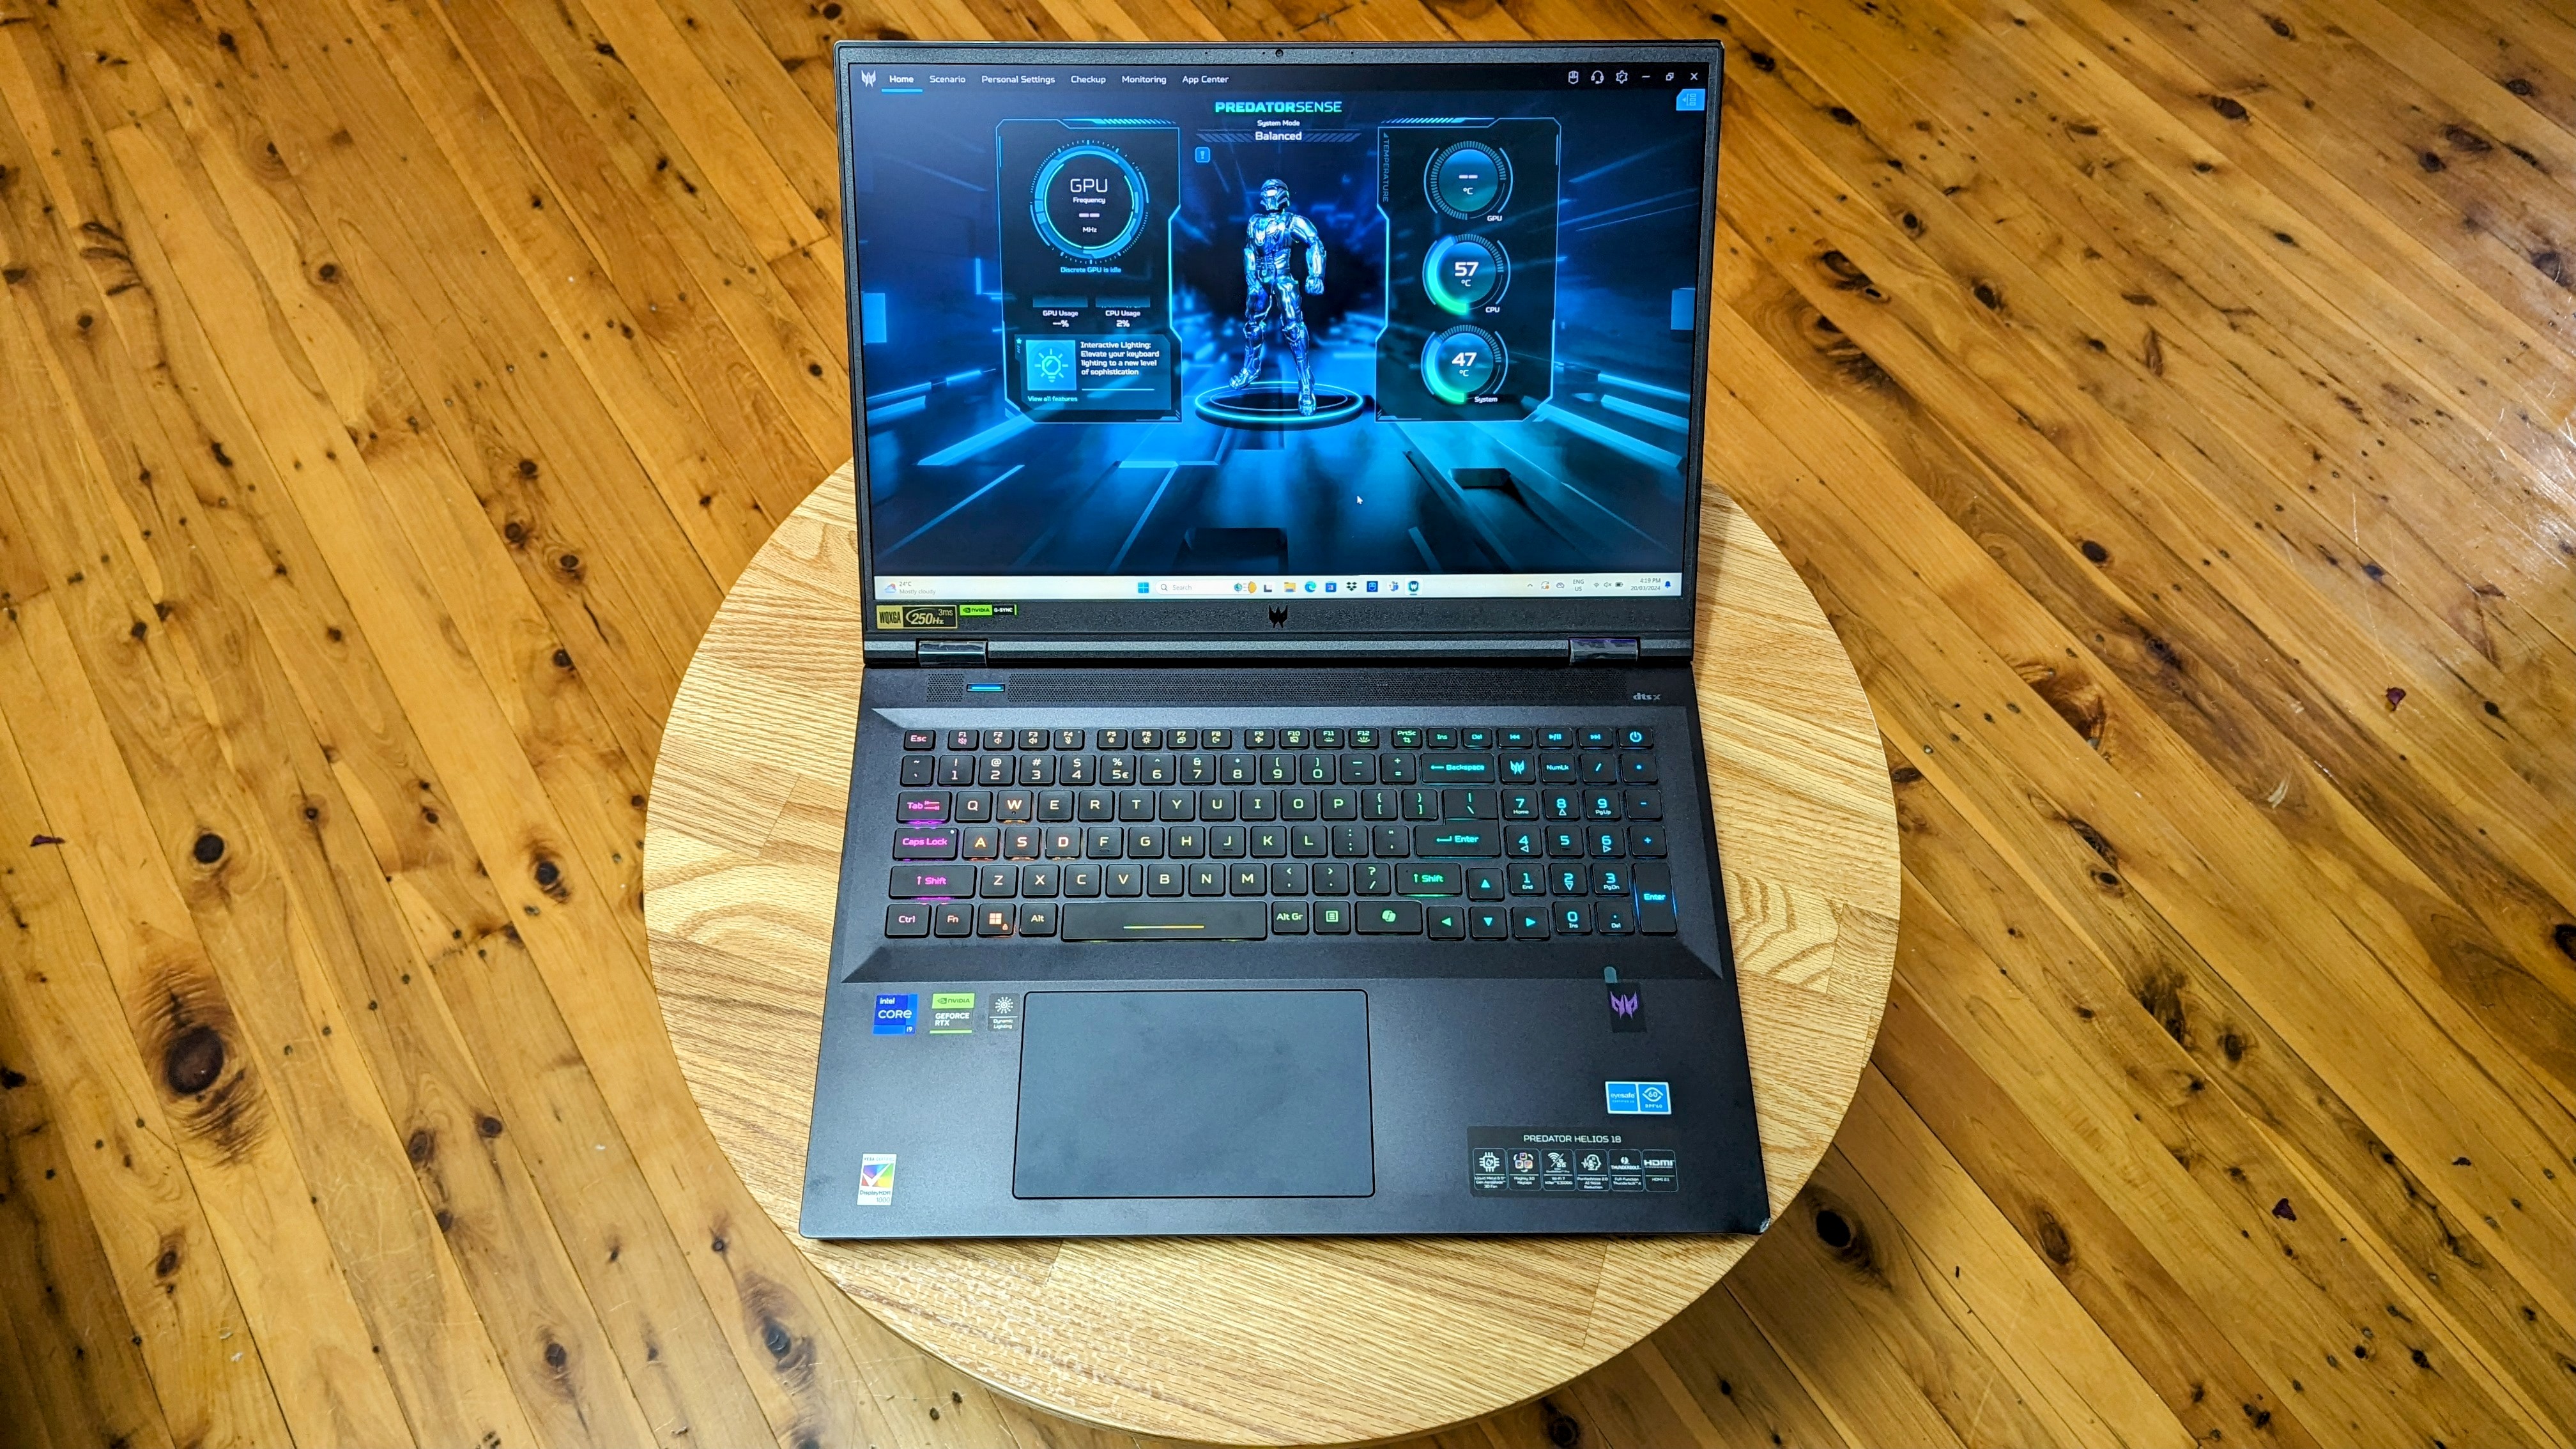 Acer Predator 18 inch gaming laptop